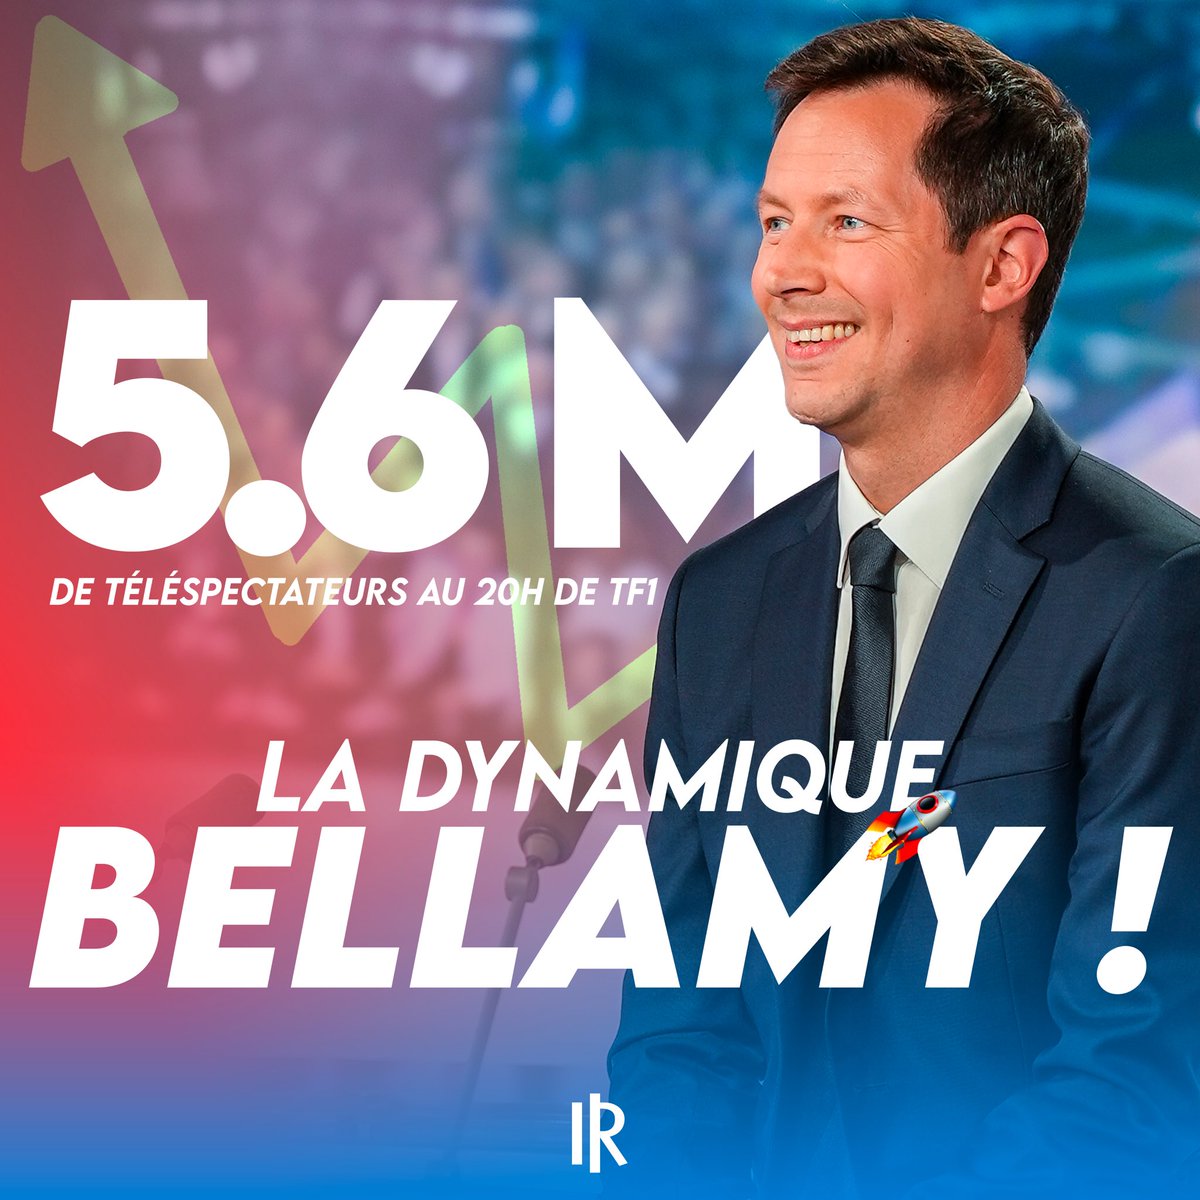 🇫🇷🇪🇺 Vous étiez 5,6 millions à suivre @fxbellamy sur le #20HTF1, un record d'audience.

Merci à tous ! La dynamique de la droite s'accélère 🚀

#AvecBellamy #Europeennnes2024